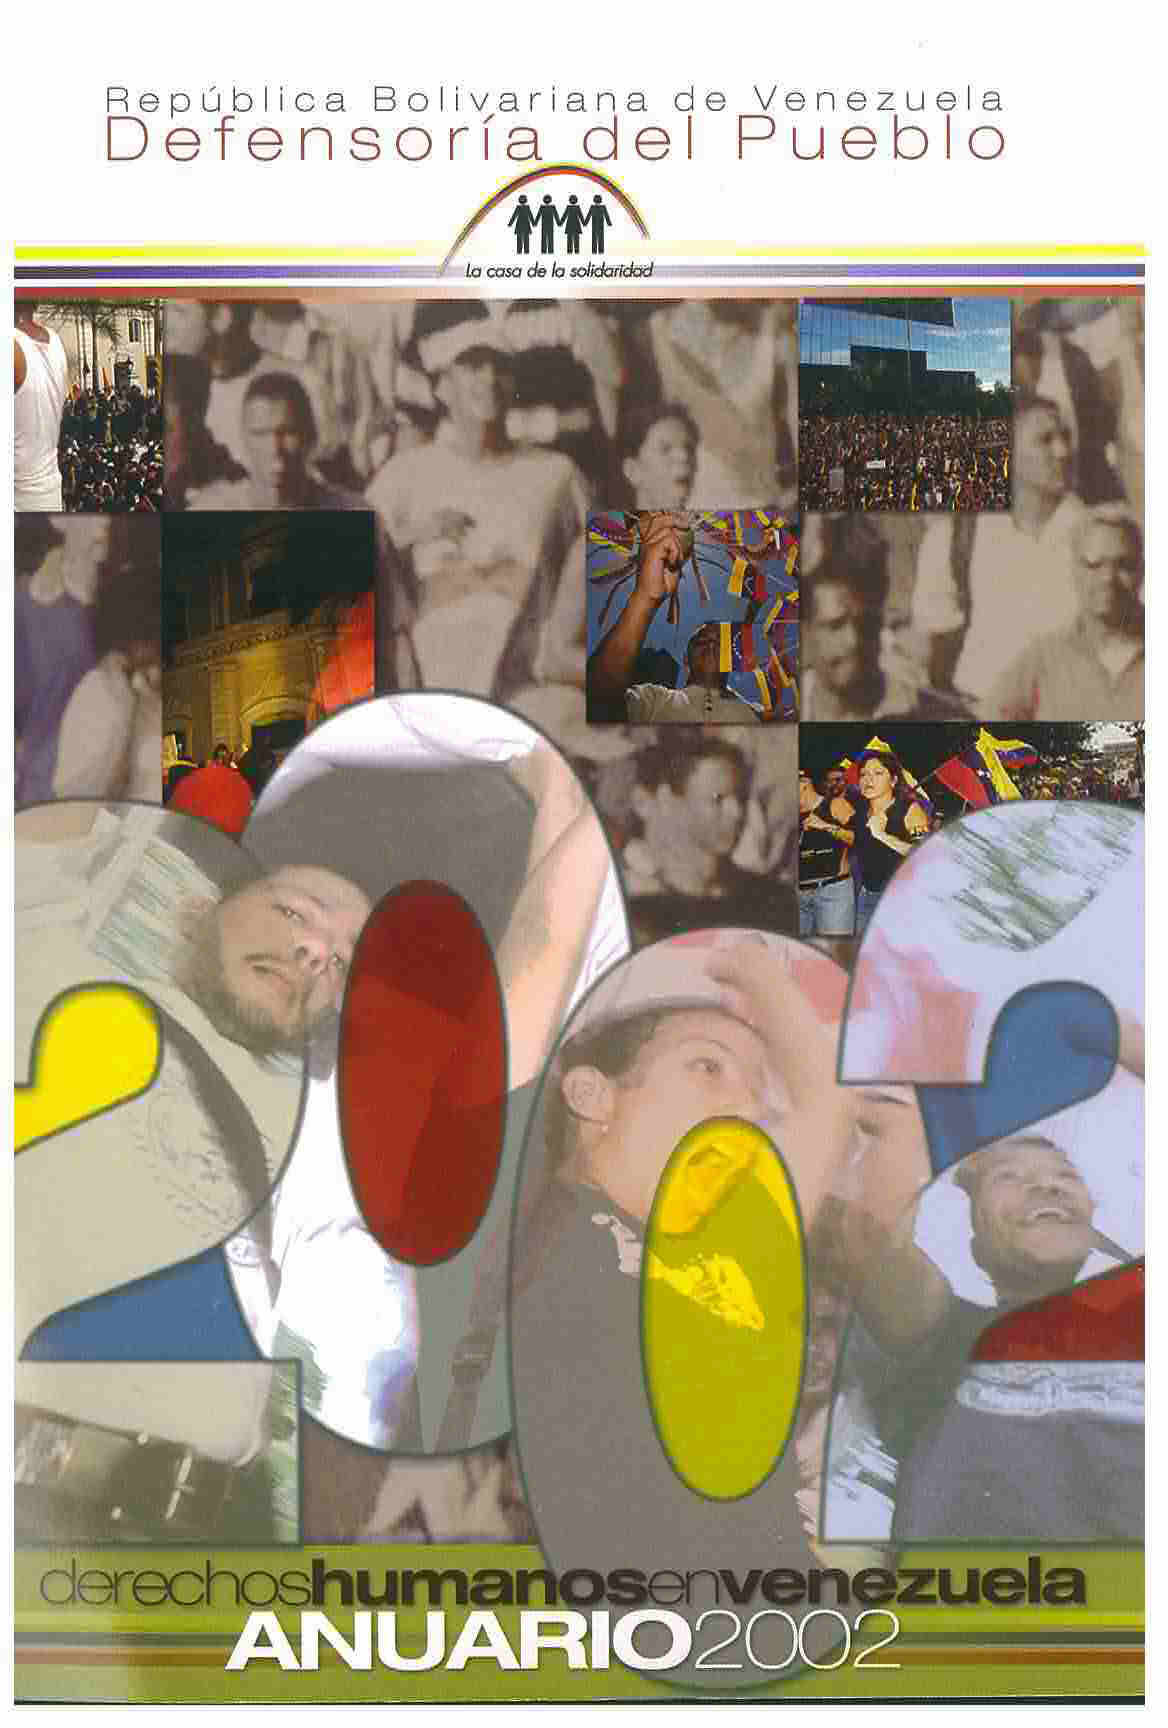 Anuario 2002 Derechos Humanos en Venezuela